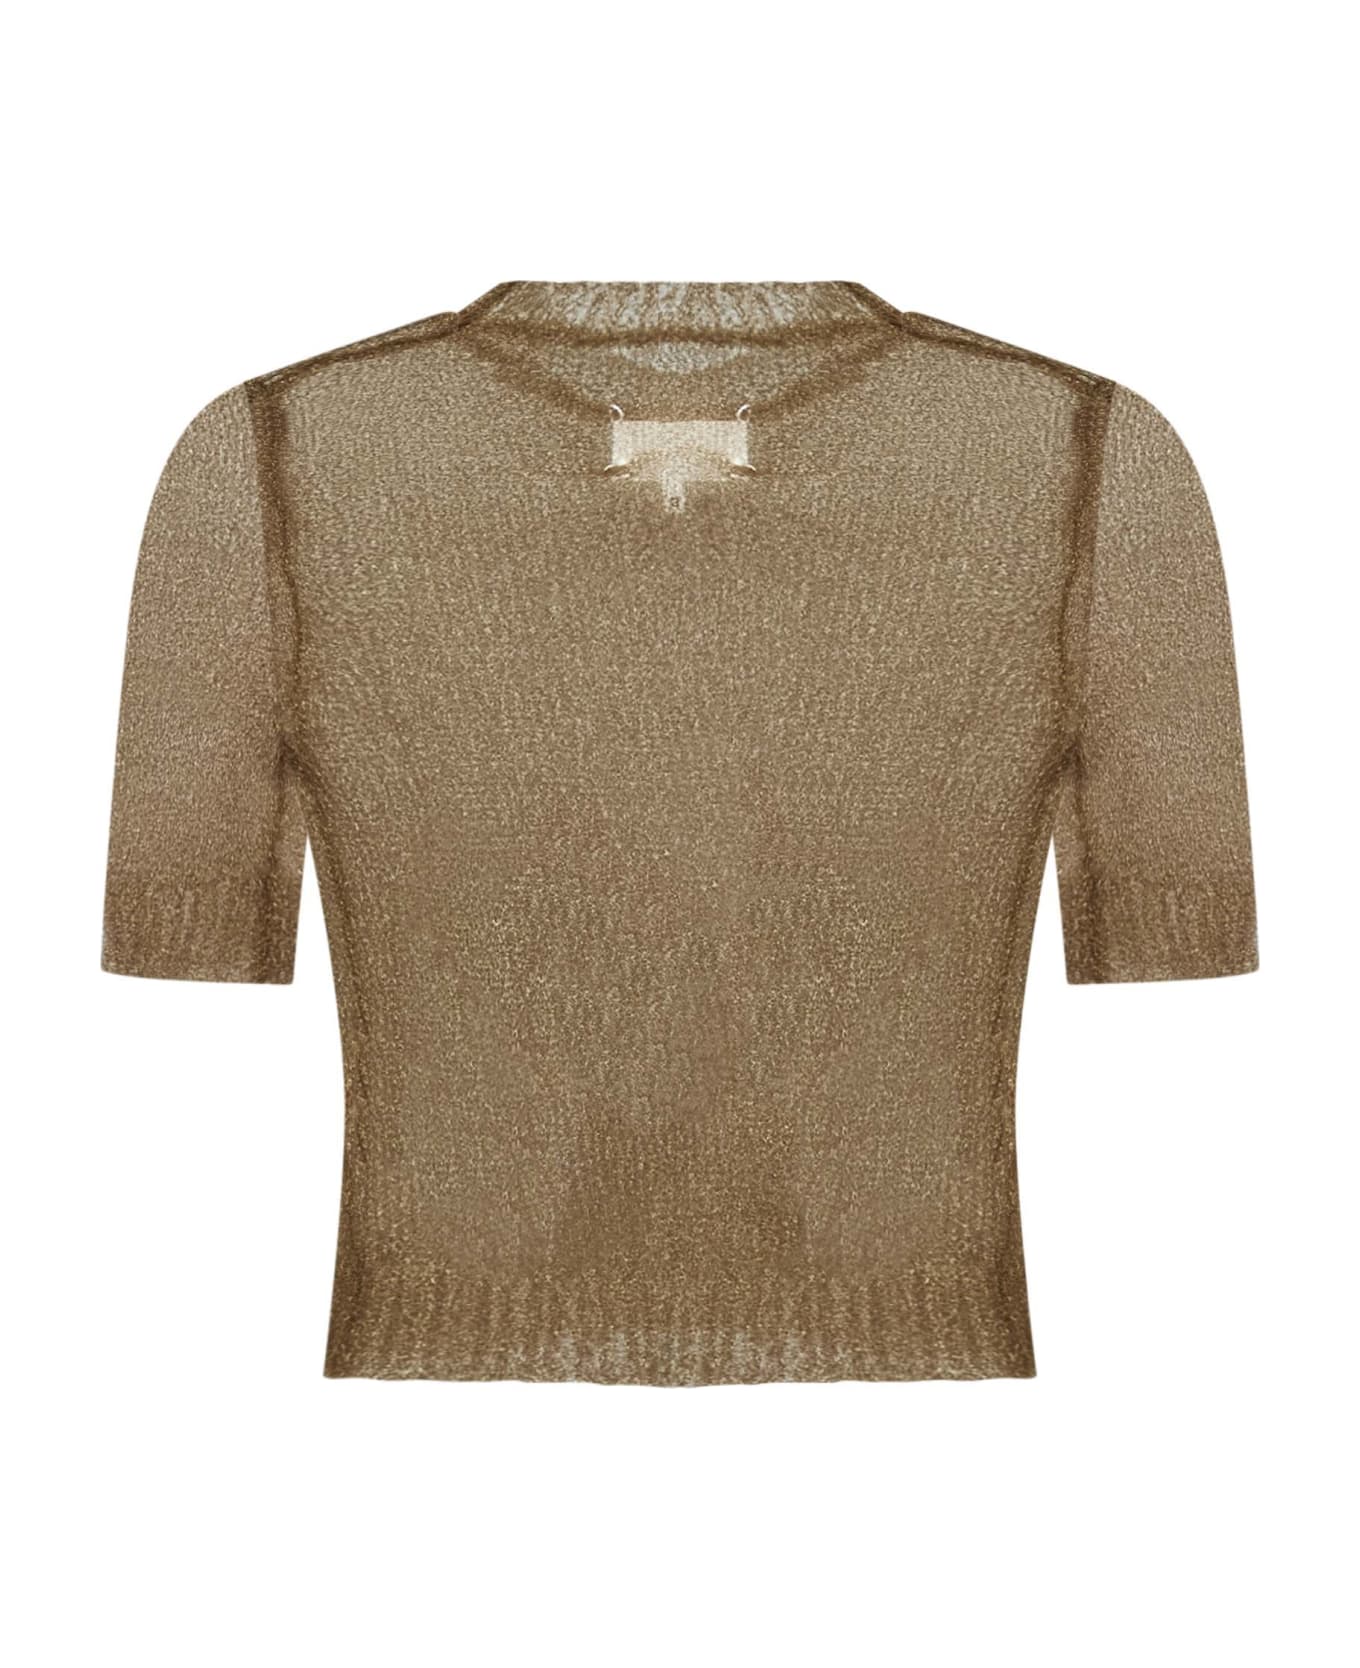 Maison Margiela Sweater - Gold